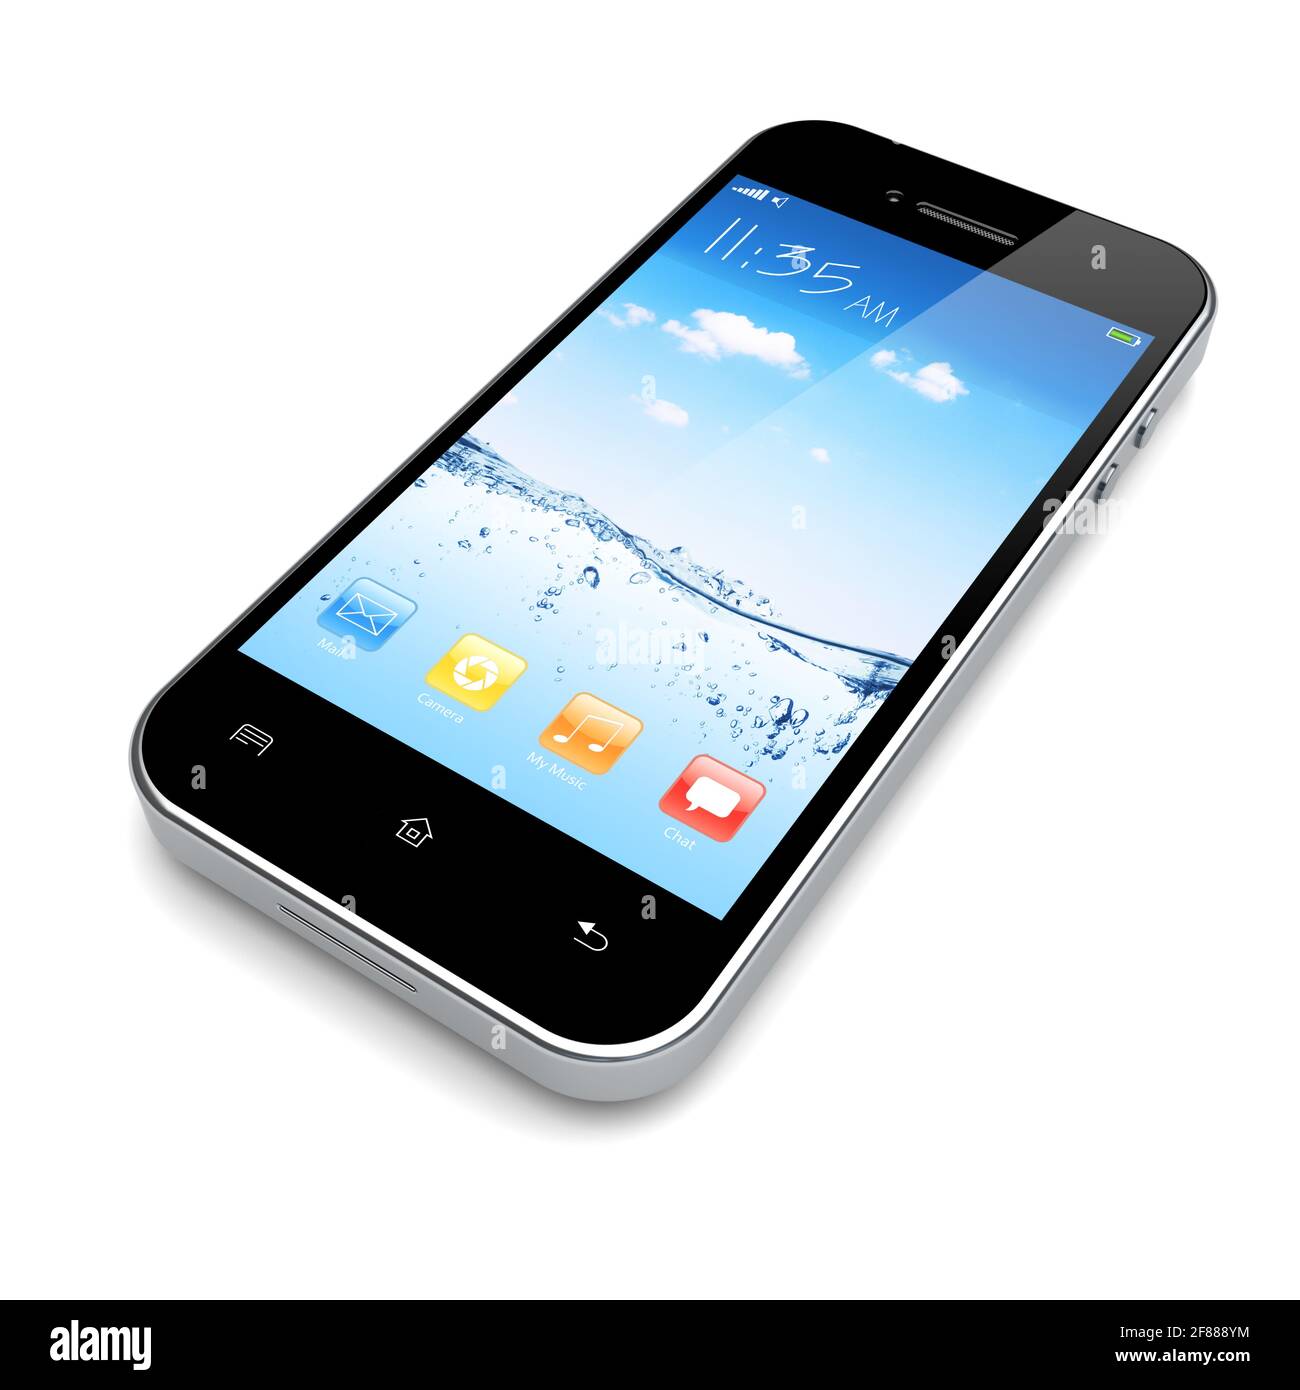 Smartphone mobile avec fond d'écran bleu et ciel et applications colorées sur un écran. Banque D'Images